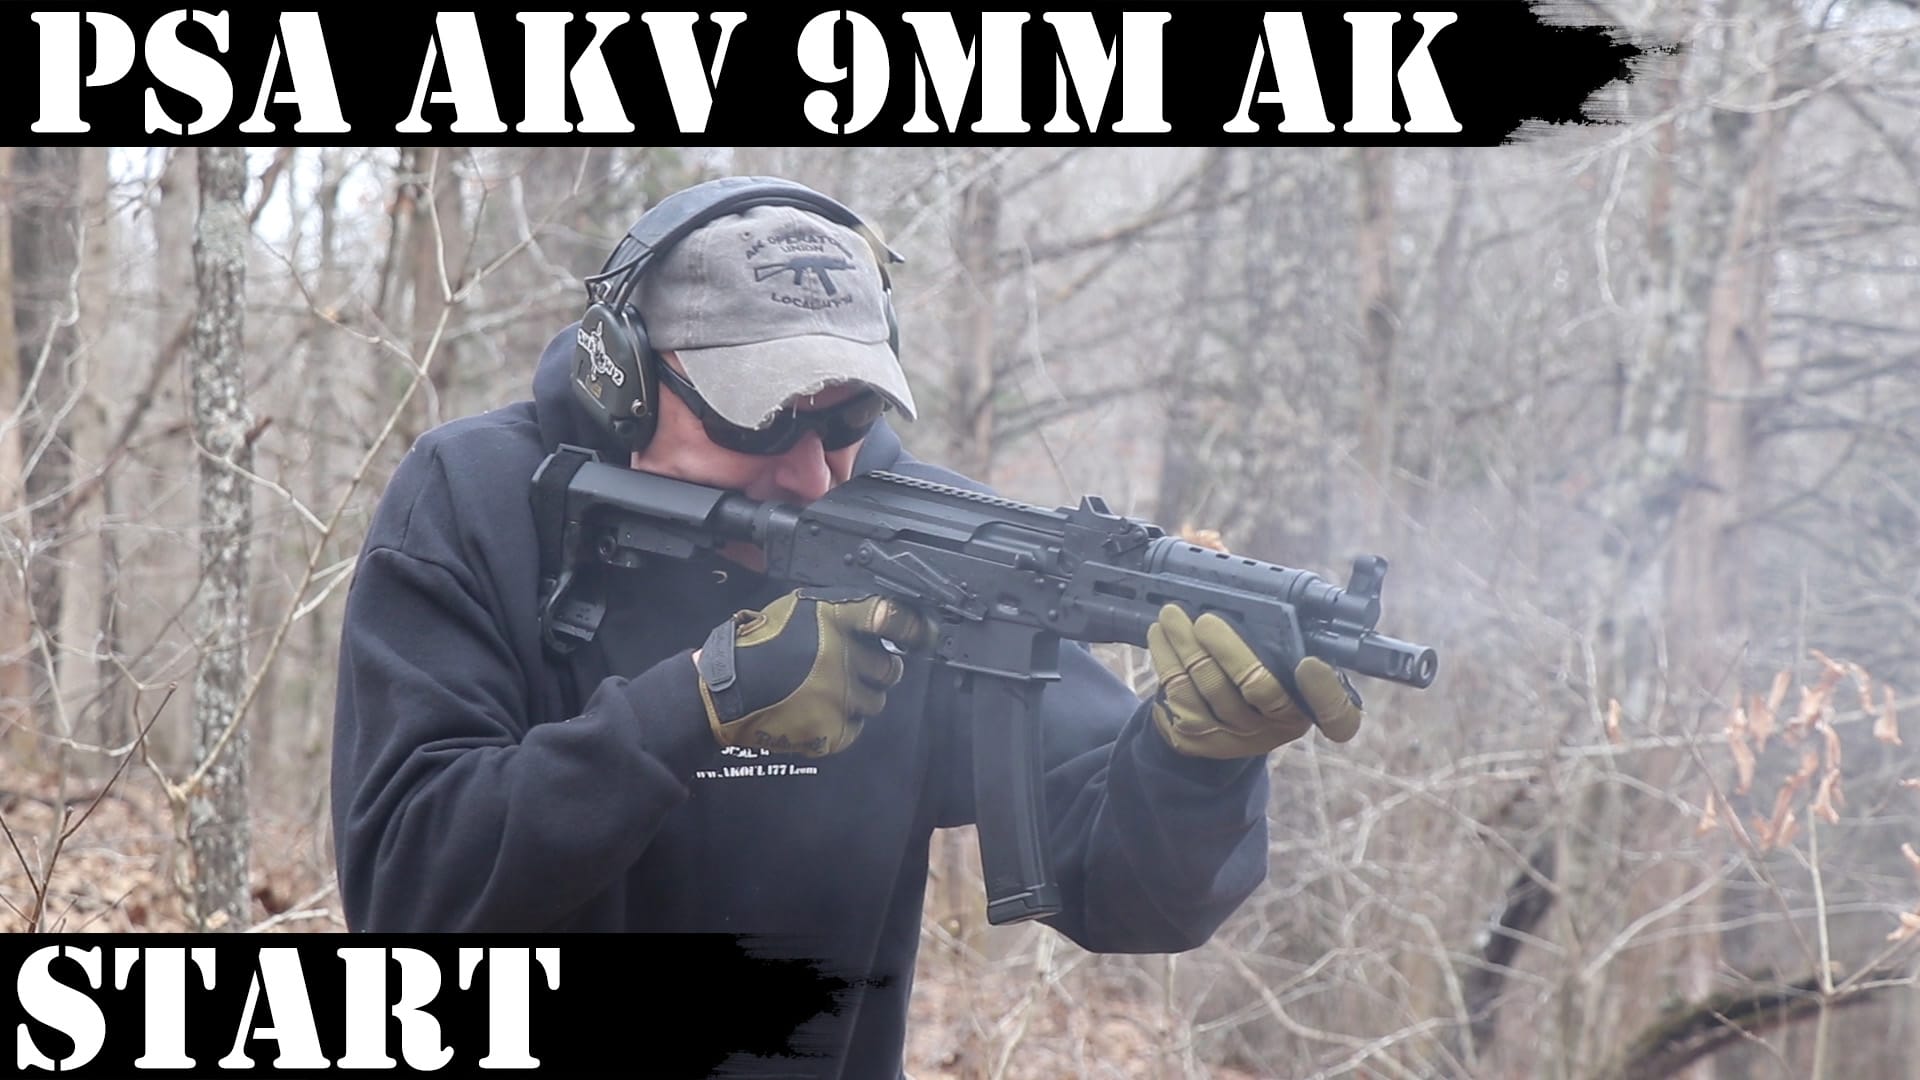 PSA AKv – 9mm AK: It starts now…